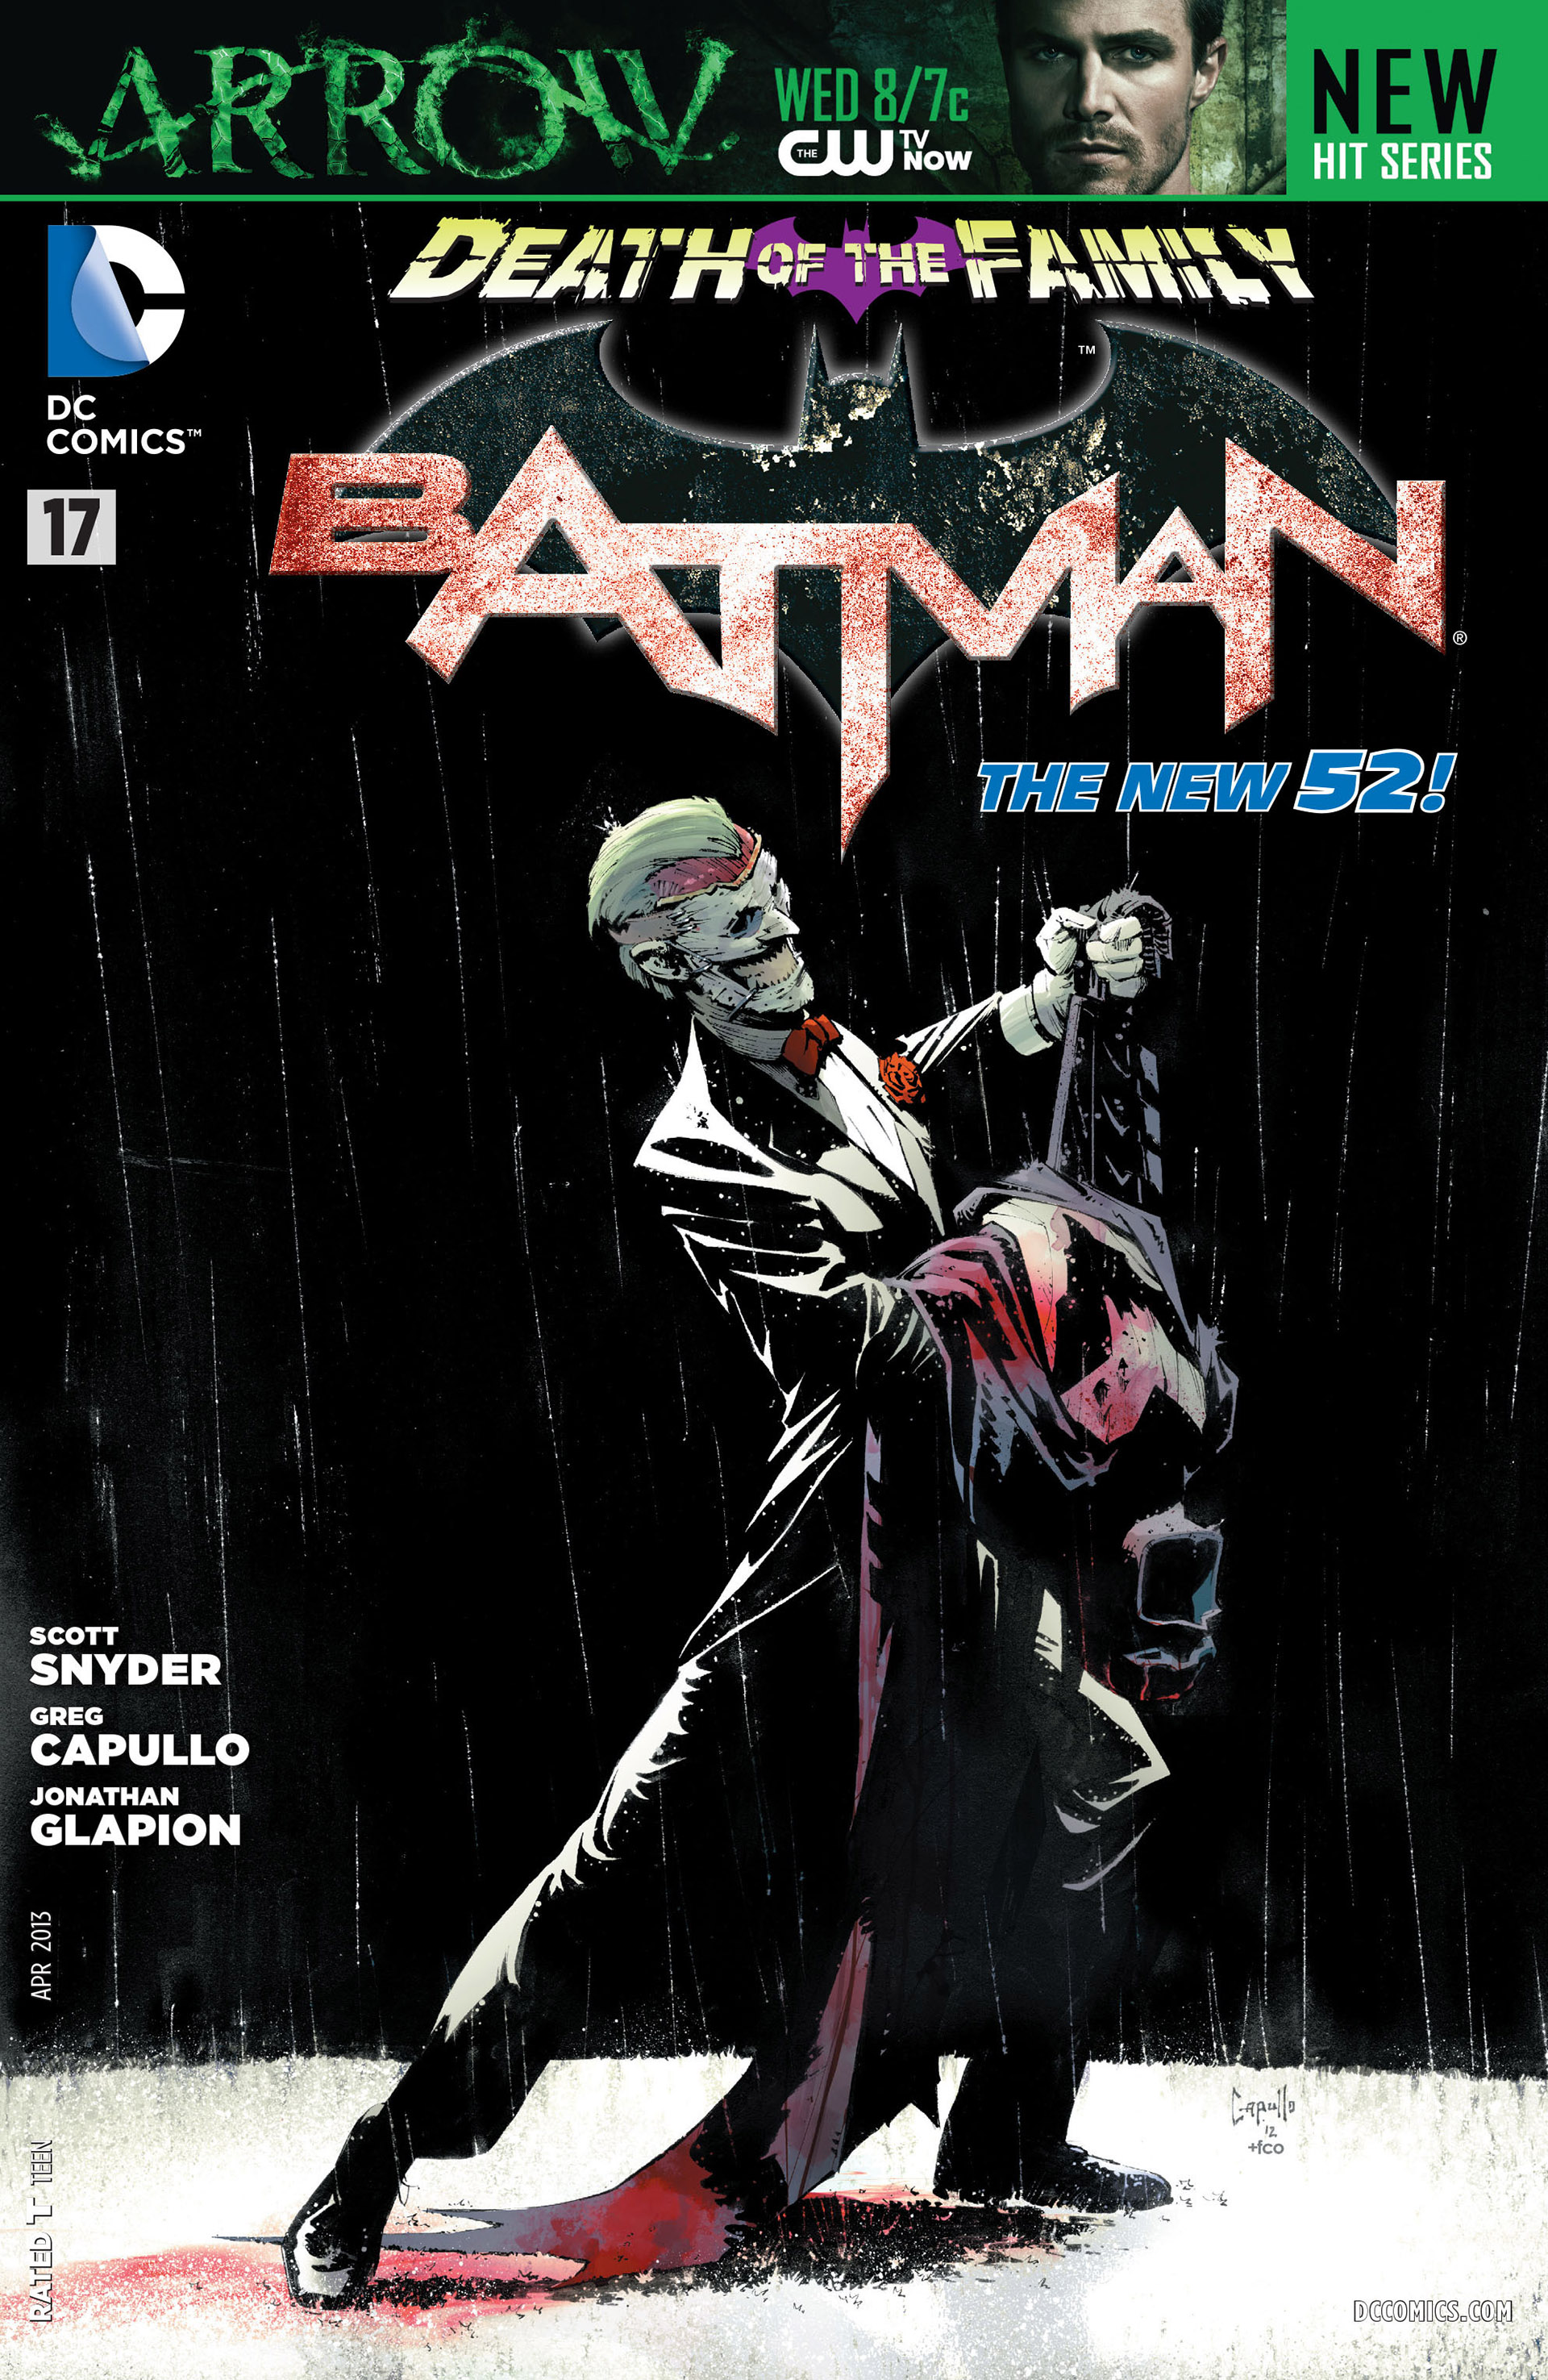 Batman Vol. 2 #17